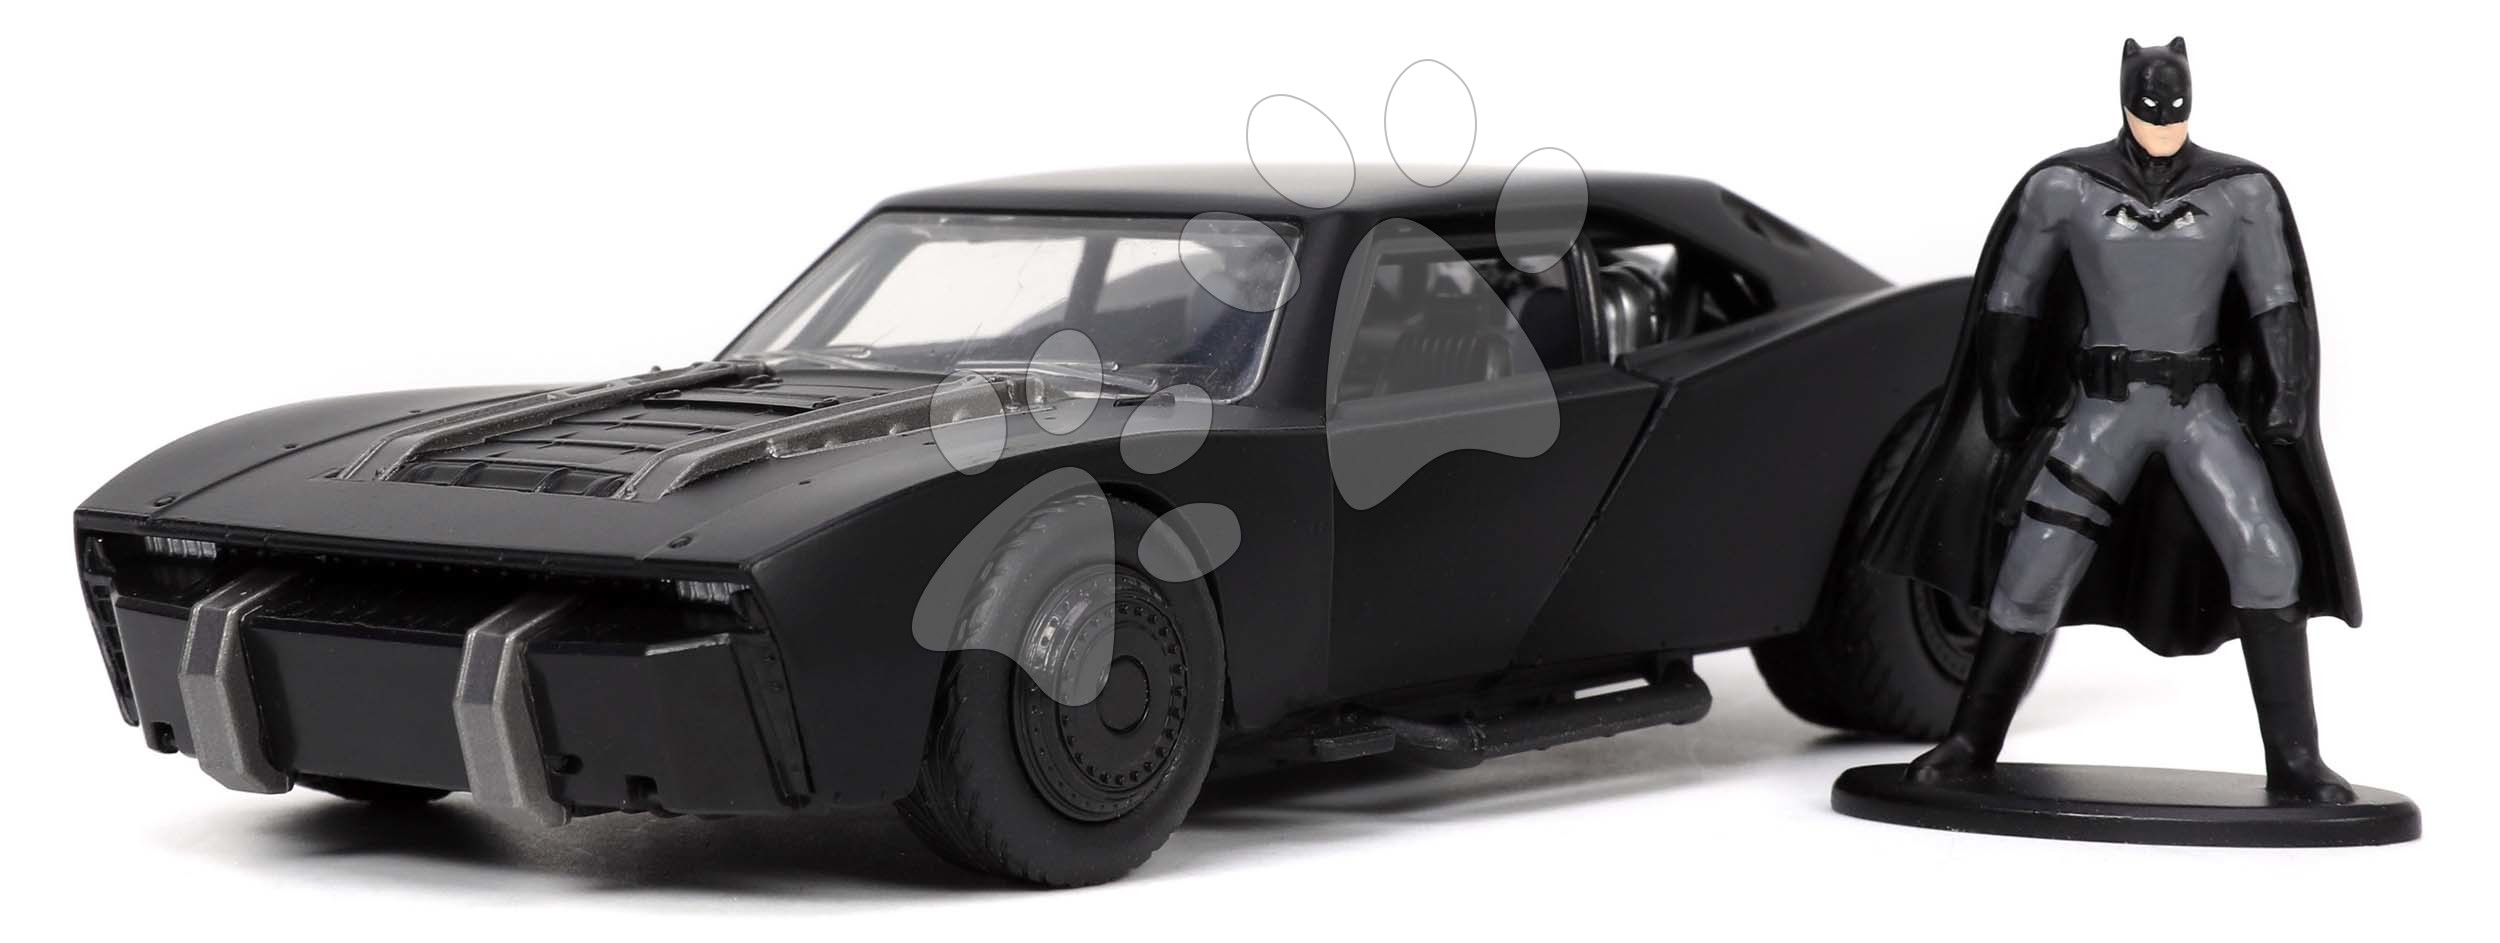 Autíčko Batman Batmobile 2022 Jada kovové s otevíratelnými dveřmi a figurkou Batmana délka 13,5 cm 1:32